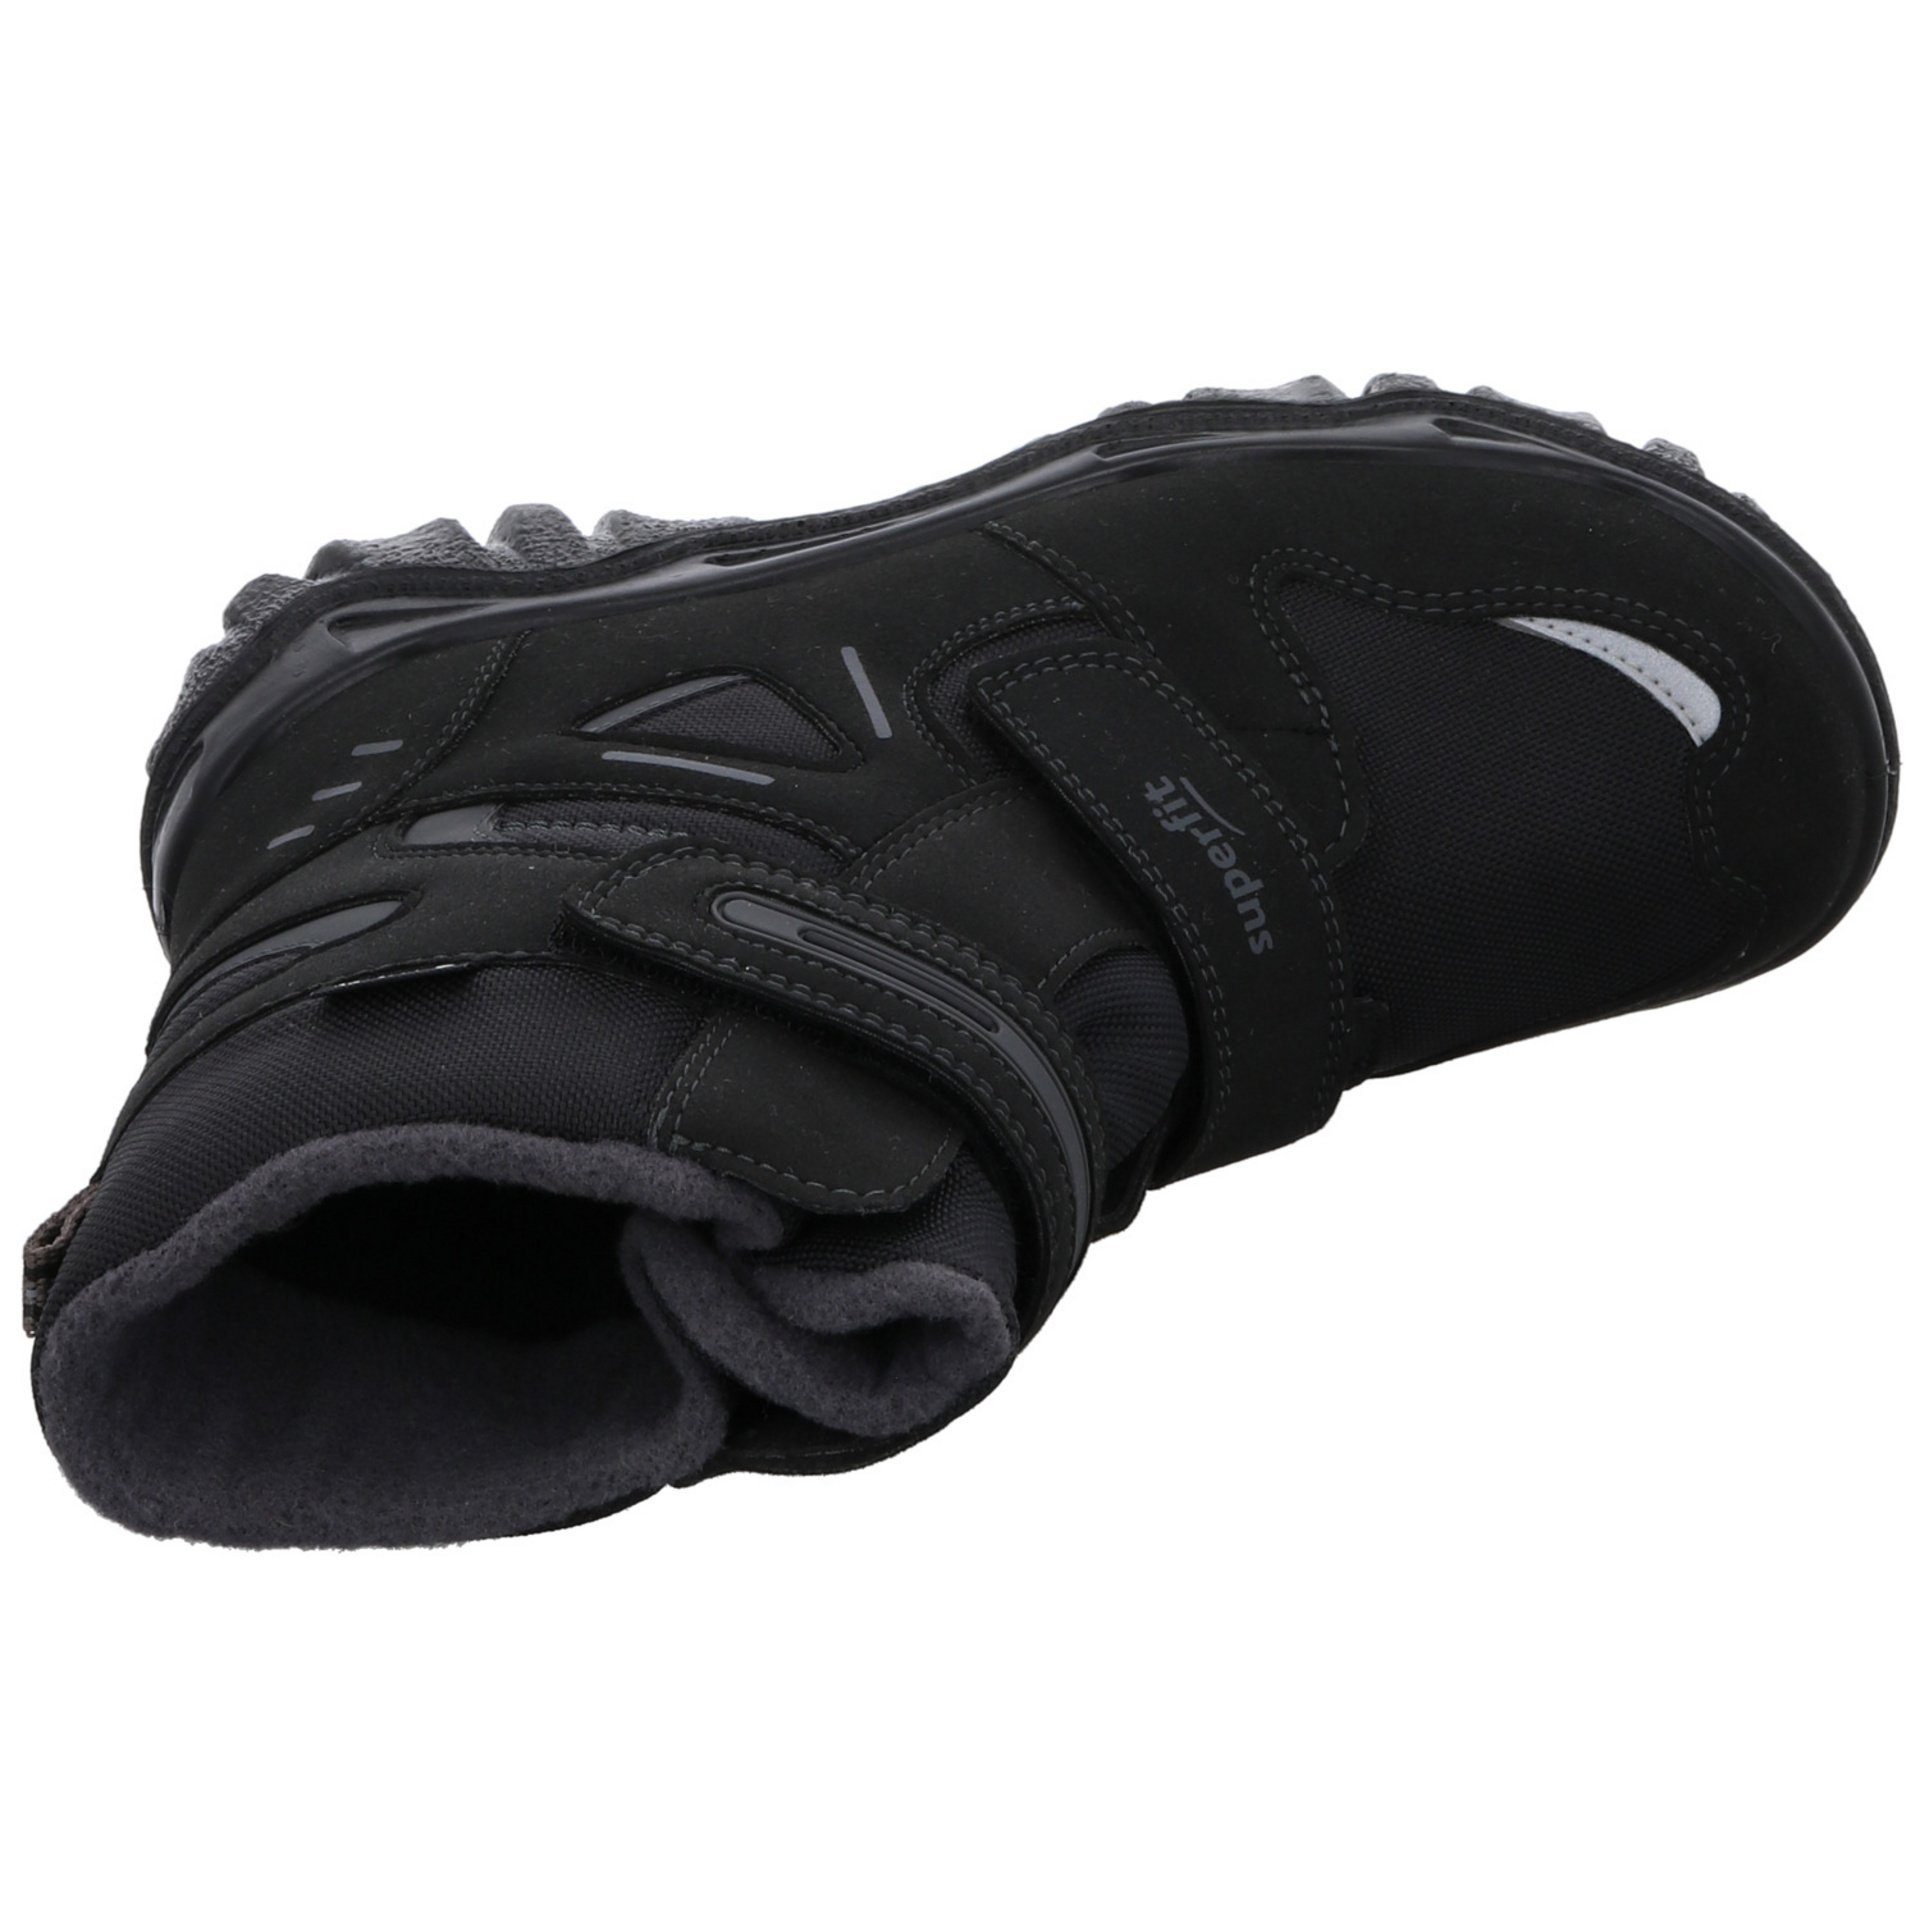 Superfit Jungen Stiefel Synthetikkombination Stiefel Schuhe Boots schwarz 2 grau Gore-Tex Husky